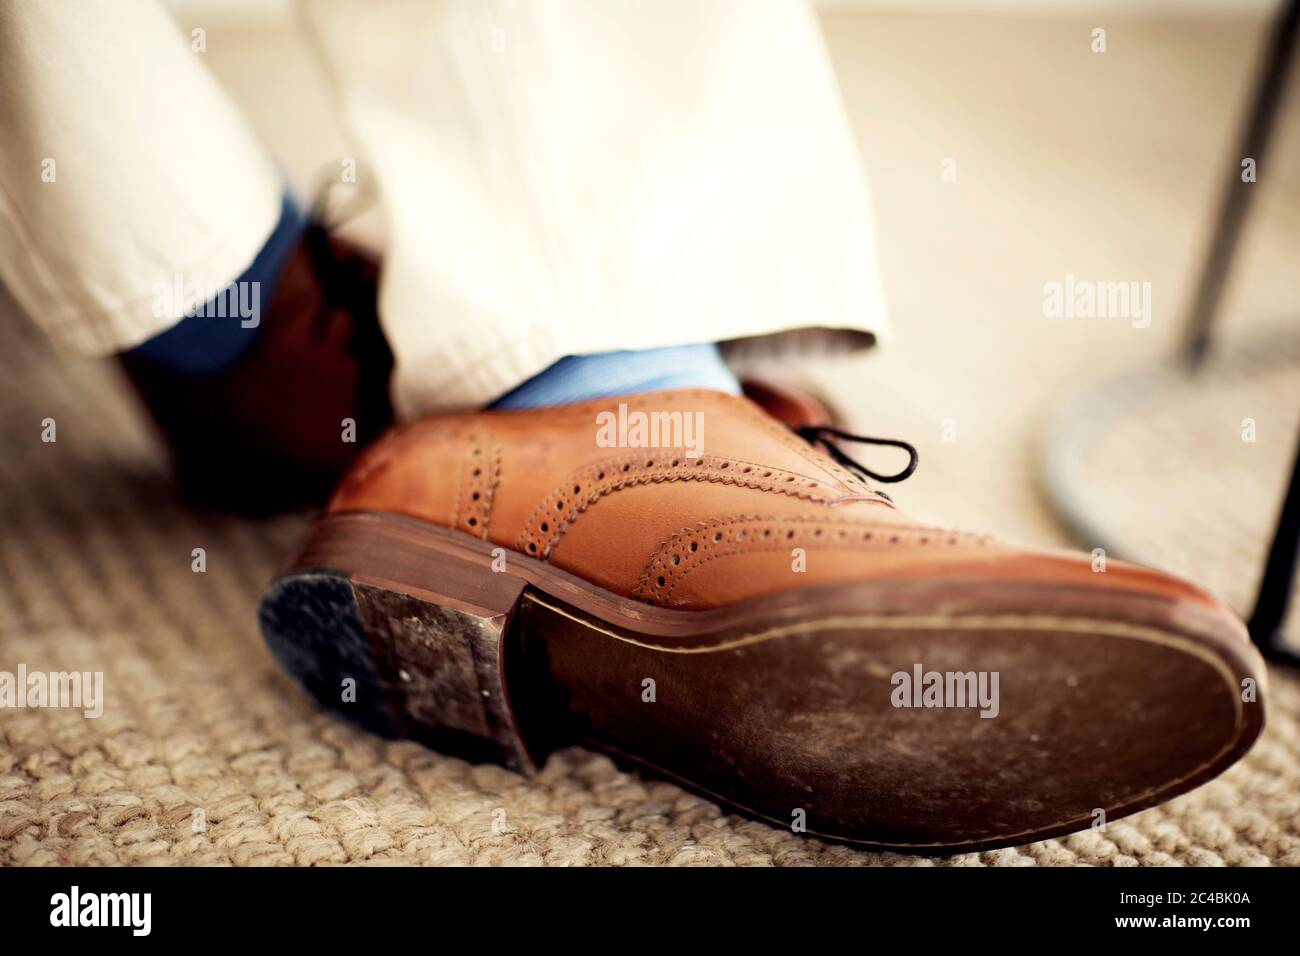 Nahaufnahme der Füße der Person, mit braunen Lederbrogues, blauen Socken und weißen Hosen. Stockfoto